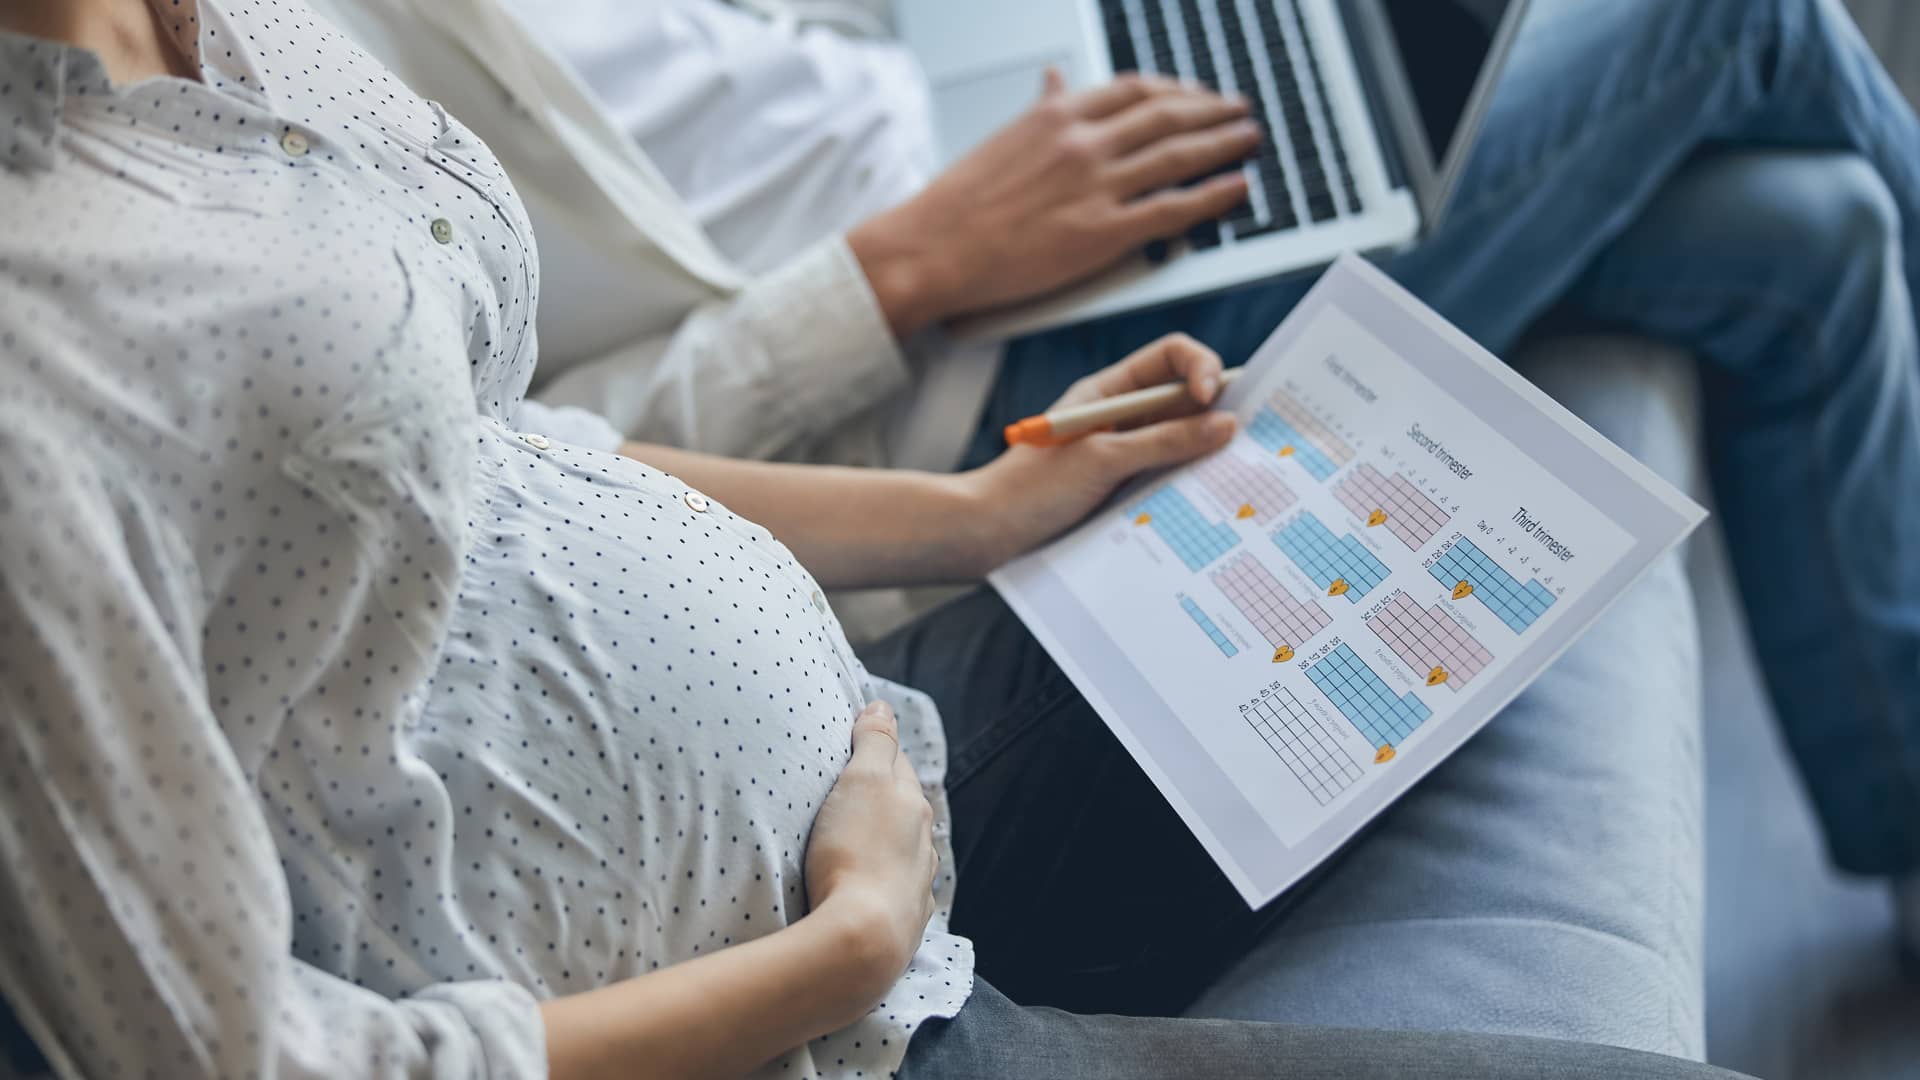 Mujer embarazada revisa un calendario de su embarazo tratando de calcular con la fecha de su última regla cuando podría dar a luz